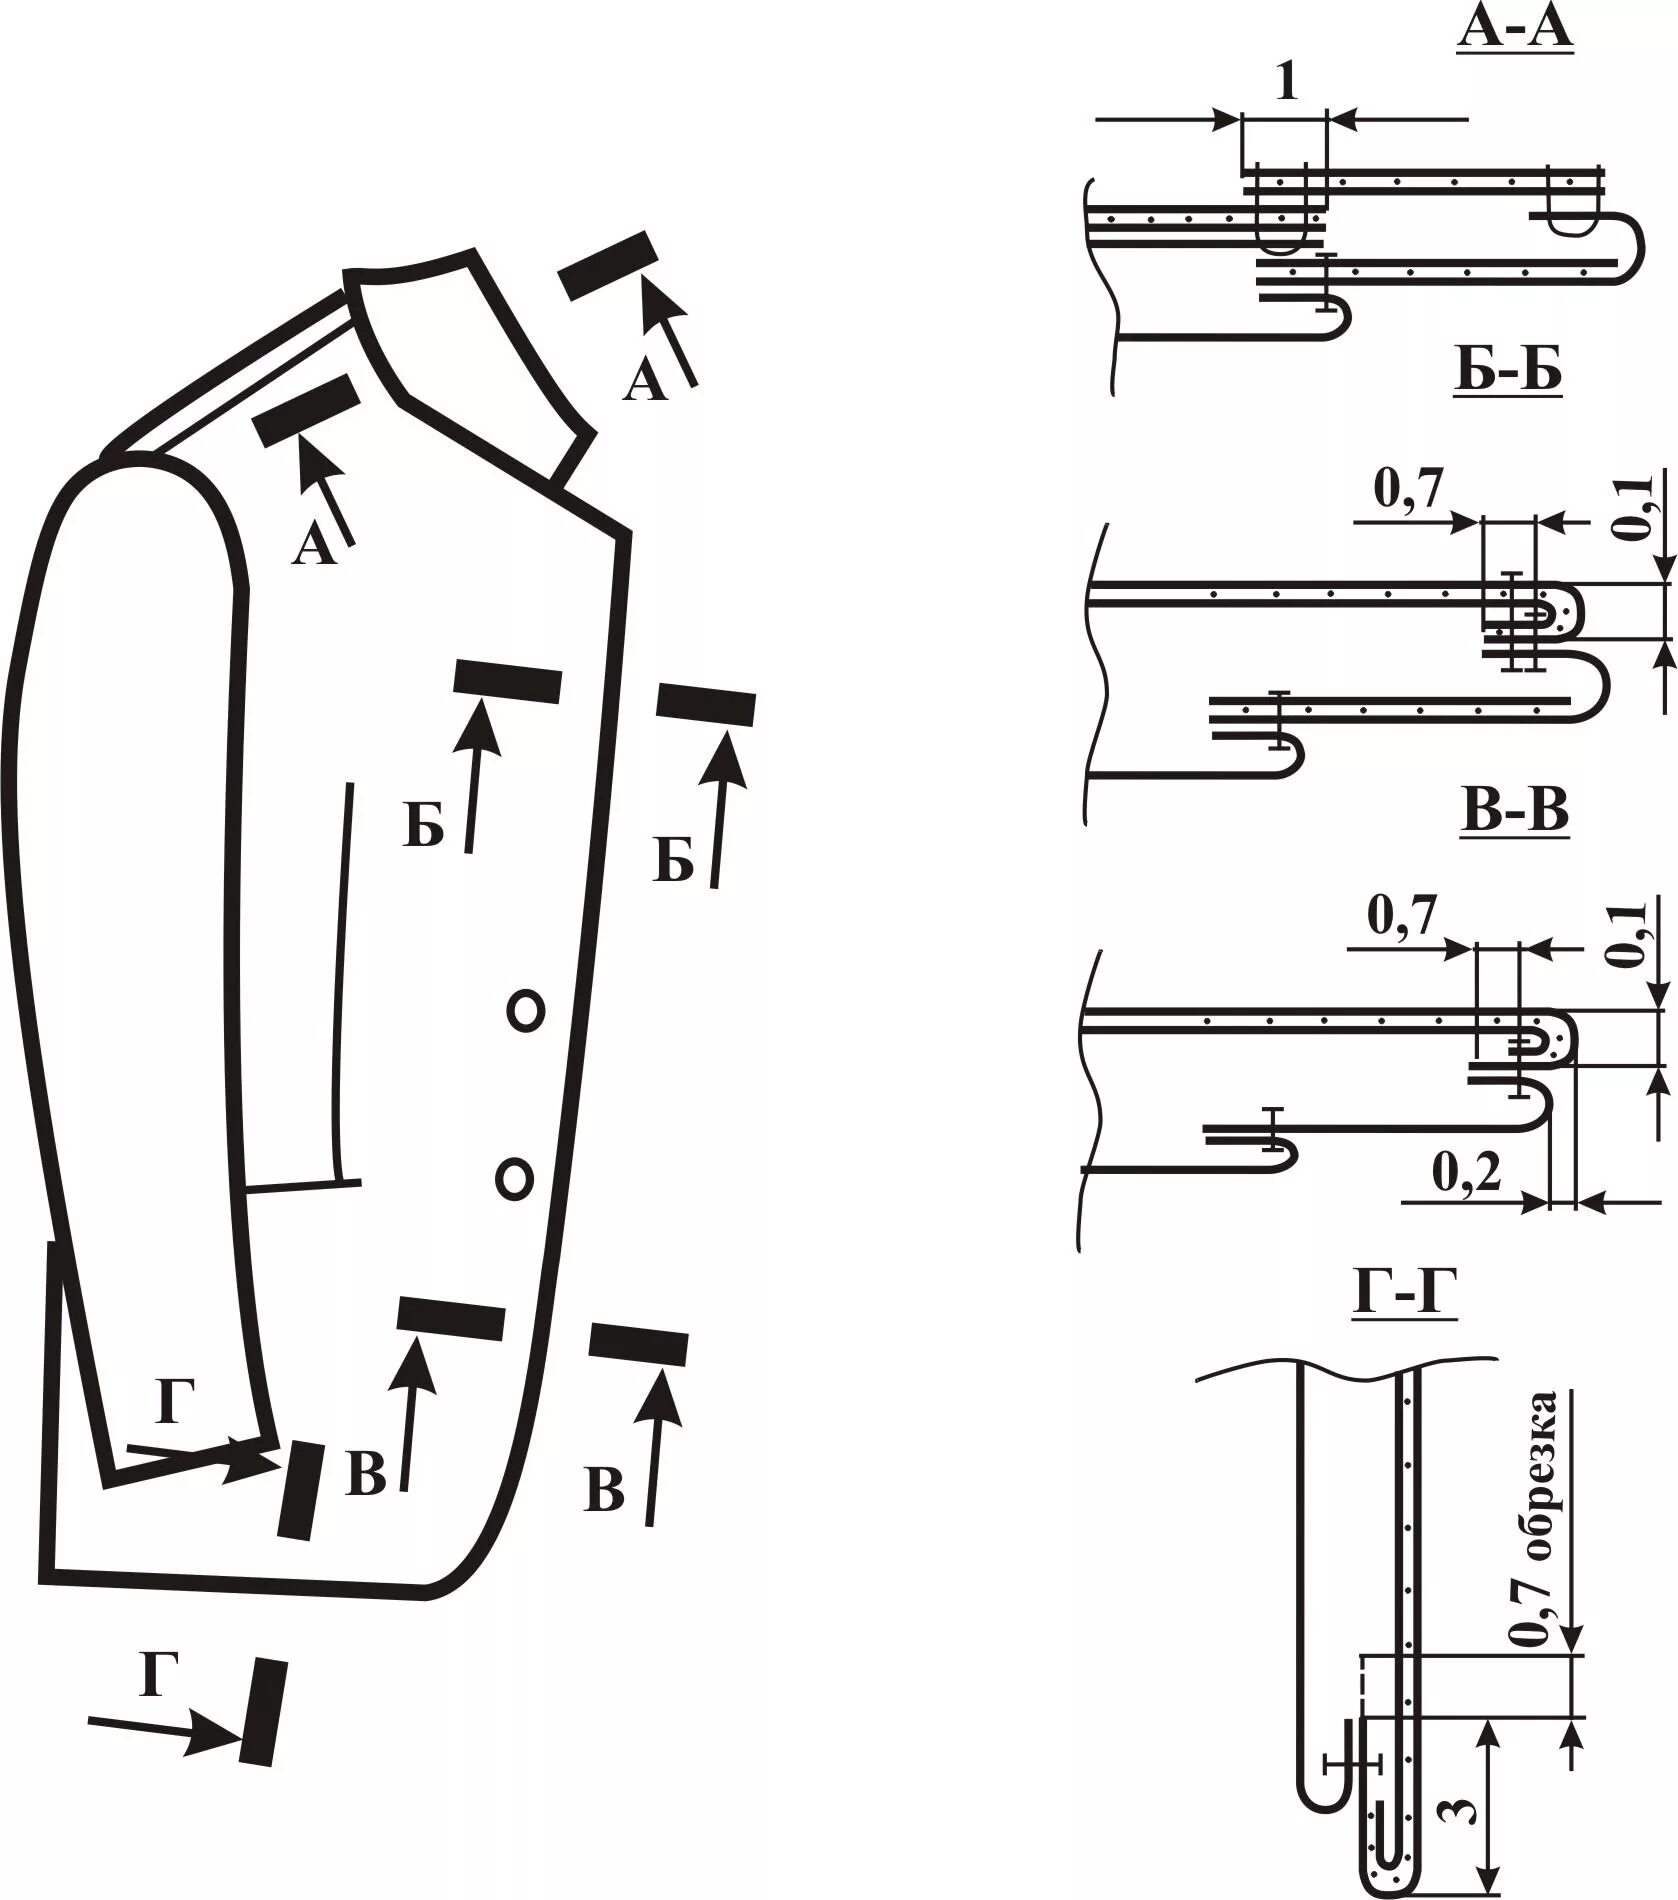 Обработка полочки. Схемы обработки воротника стойка. Сборочный чертеж швейного изделия. Схема обработки узла пиджачного воротника. Технологическая карта обработки мужского пиджака.